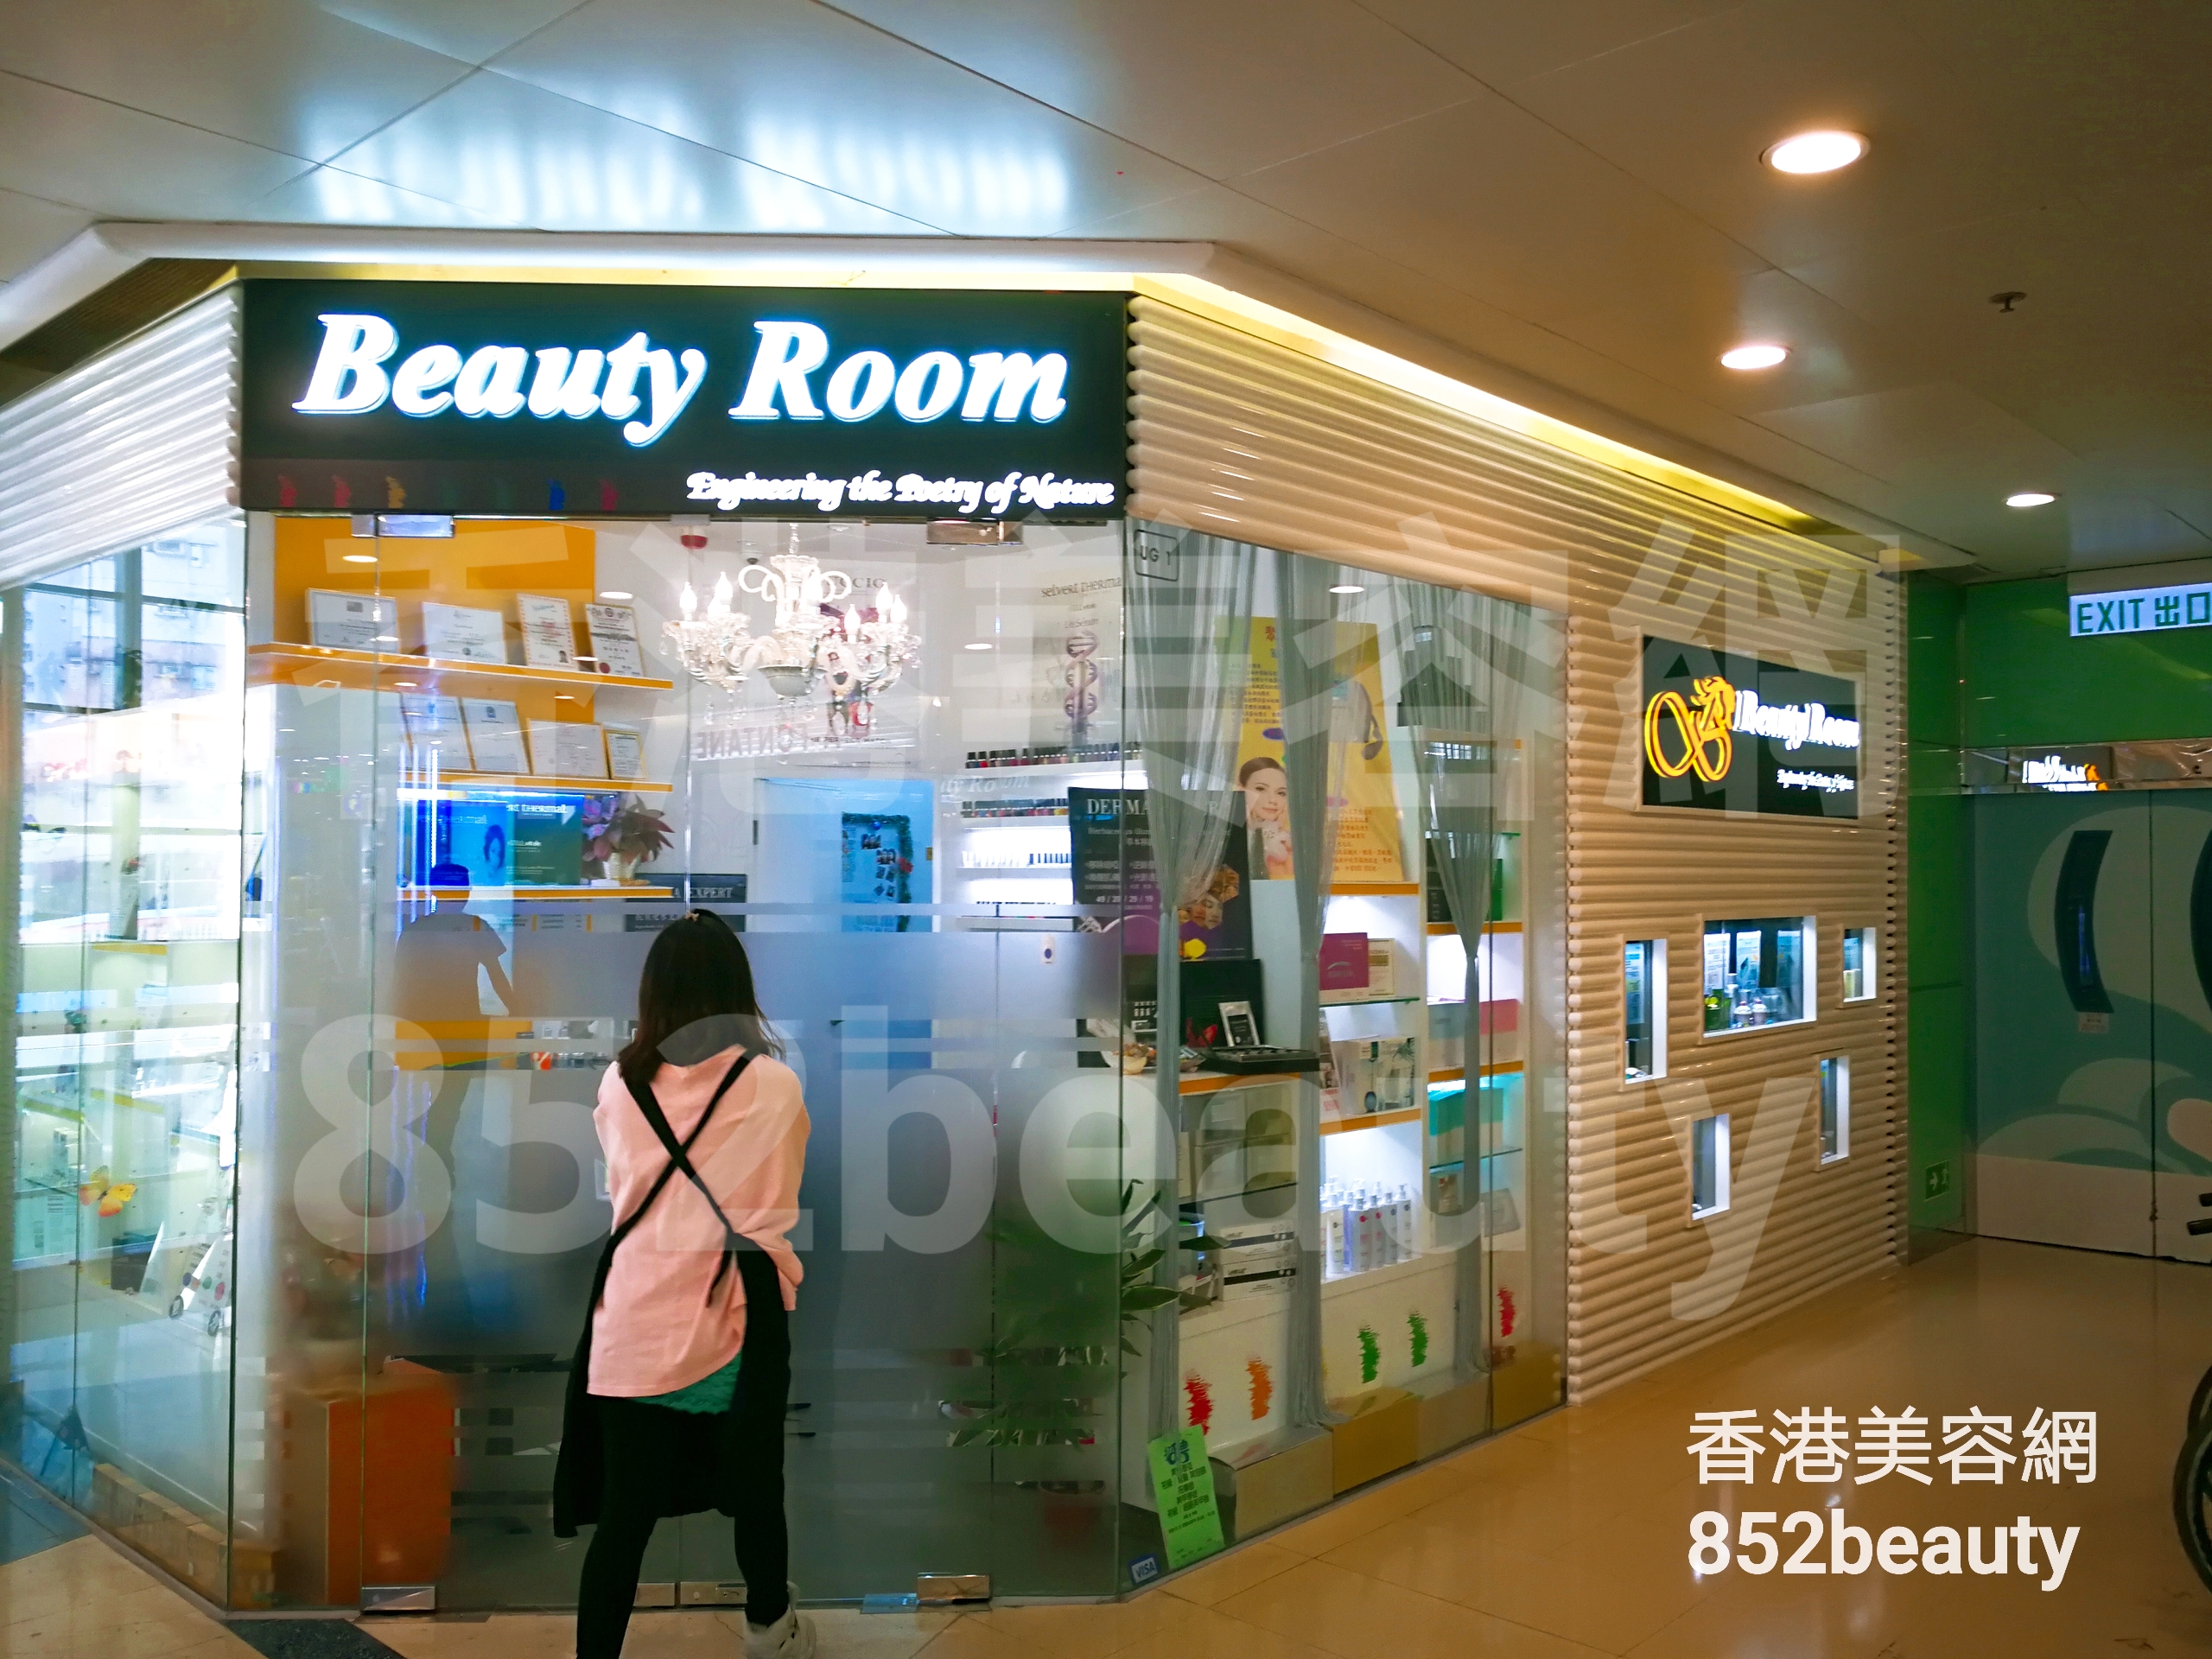 美甲: Beauty Room